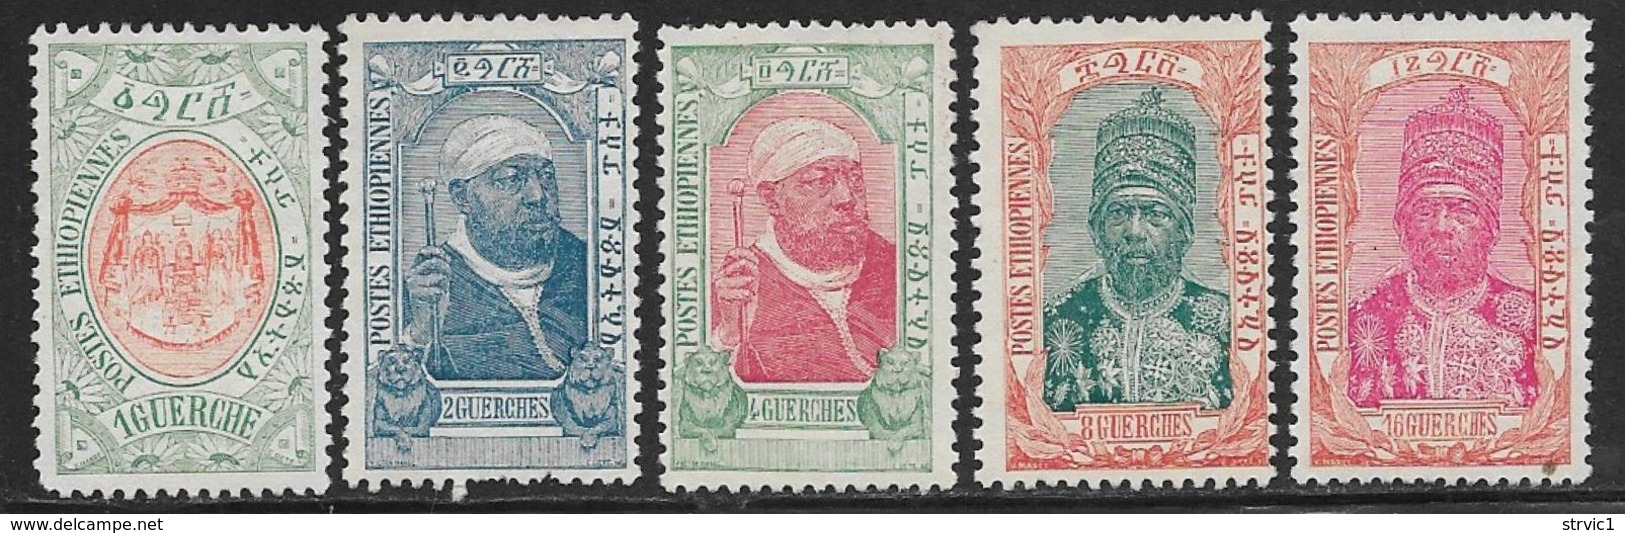 Ethiopia Scott # 89-93 Unused No Gum Part Set Throne, Menelik, 1909, CV$55.50, #90 Has Some Short Perfs - Ethiopia